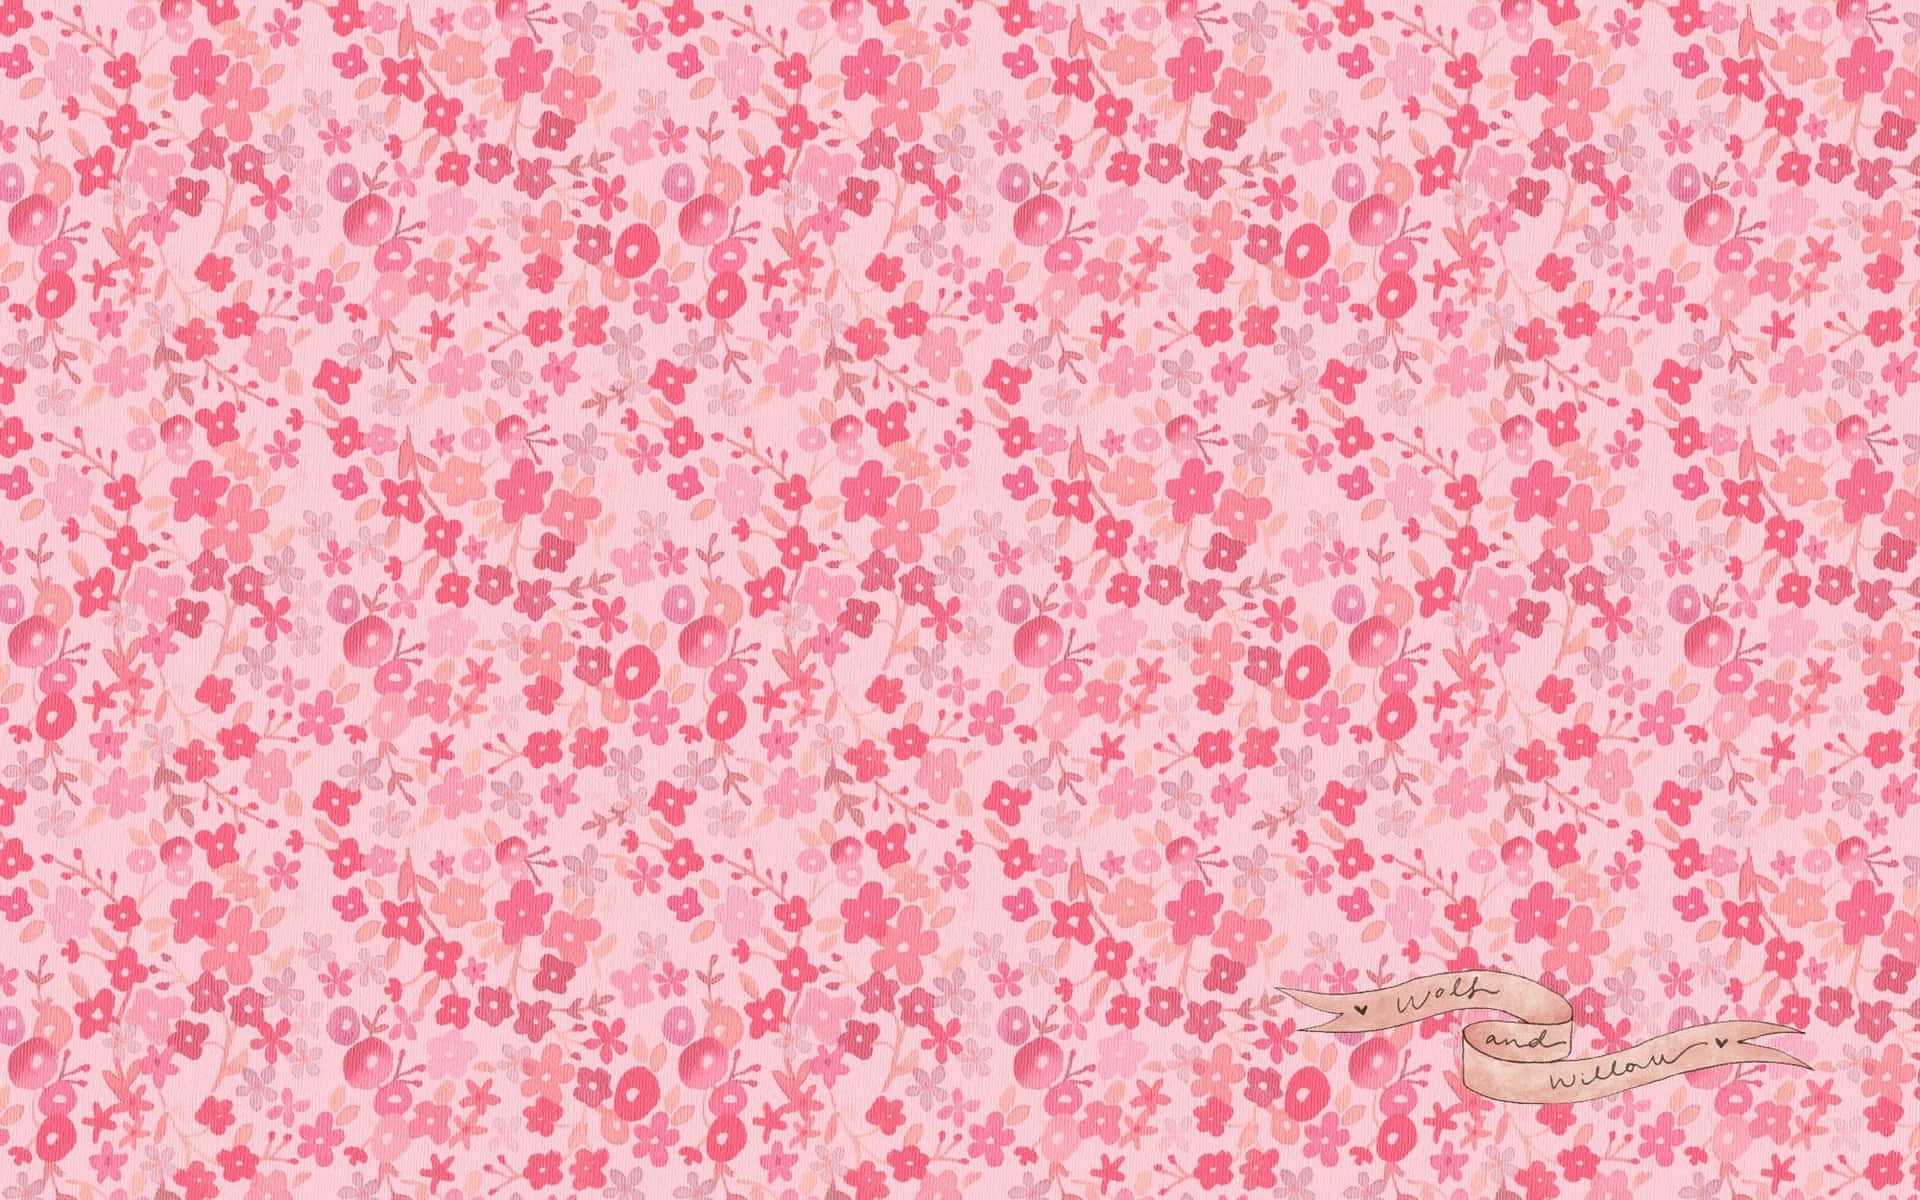 Et livligt pink infinity-symbol mod en hvid baggrund, perfekt til enhver pige vægbeklædning! Wallpaper